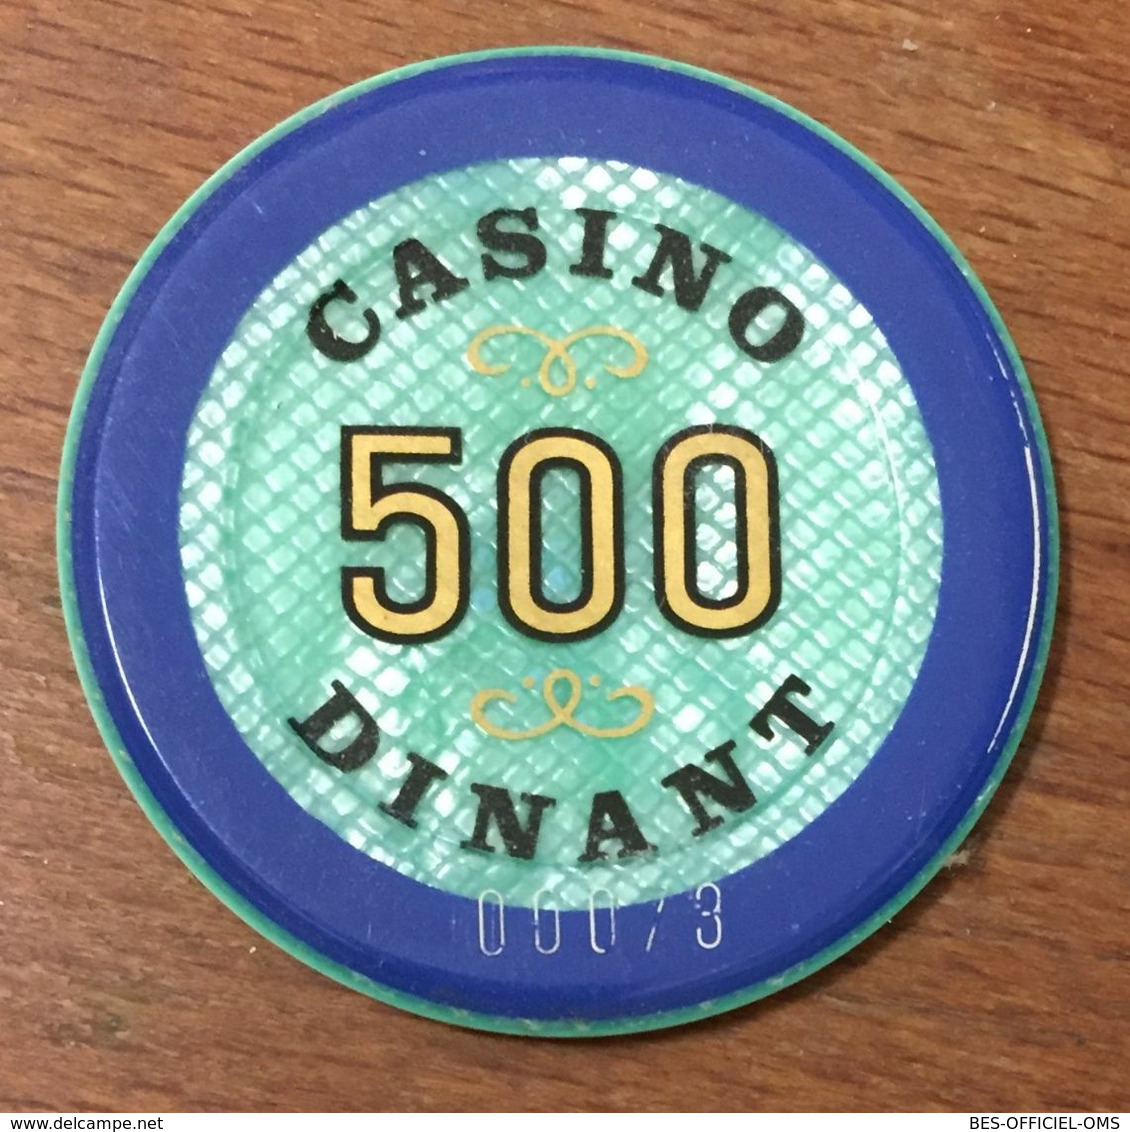 BELGIQUE DINANT JETON DE CASINO DE 500 FRANCS N° 00073 CHIPS TOKENS COINS - Casino